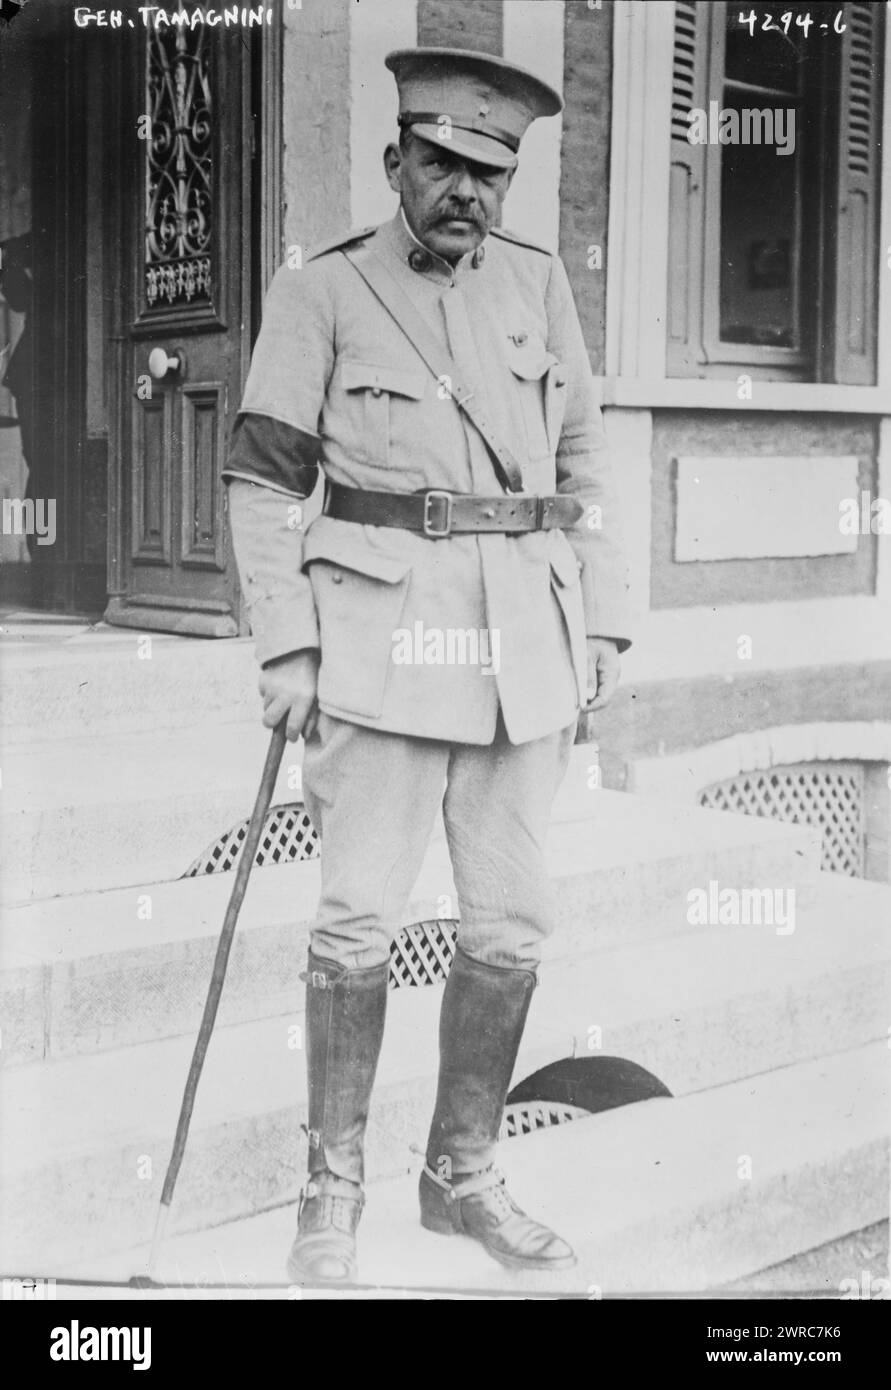 General Tamagnini, Foto zeigt General Fernando Tamagnini de Abreue Silva, Kommandant des portugiesischen Expeditionskorps (CEP) von Januar 1917 bis August 1918 während des Ersten Weltkriegs, zwischen ca. 1915 und ca. 1920, Glasnegative, 1 negativ: Glas Stockfoto